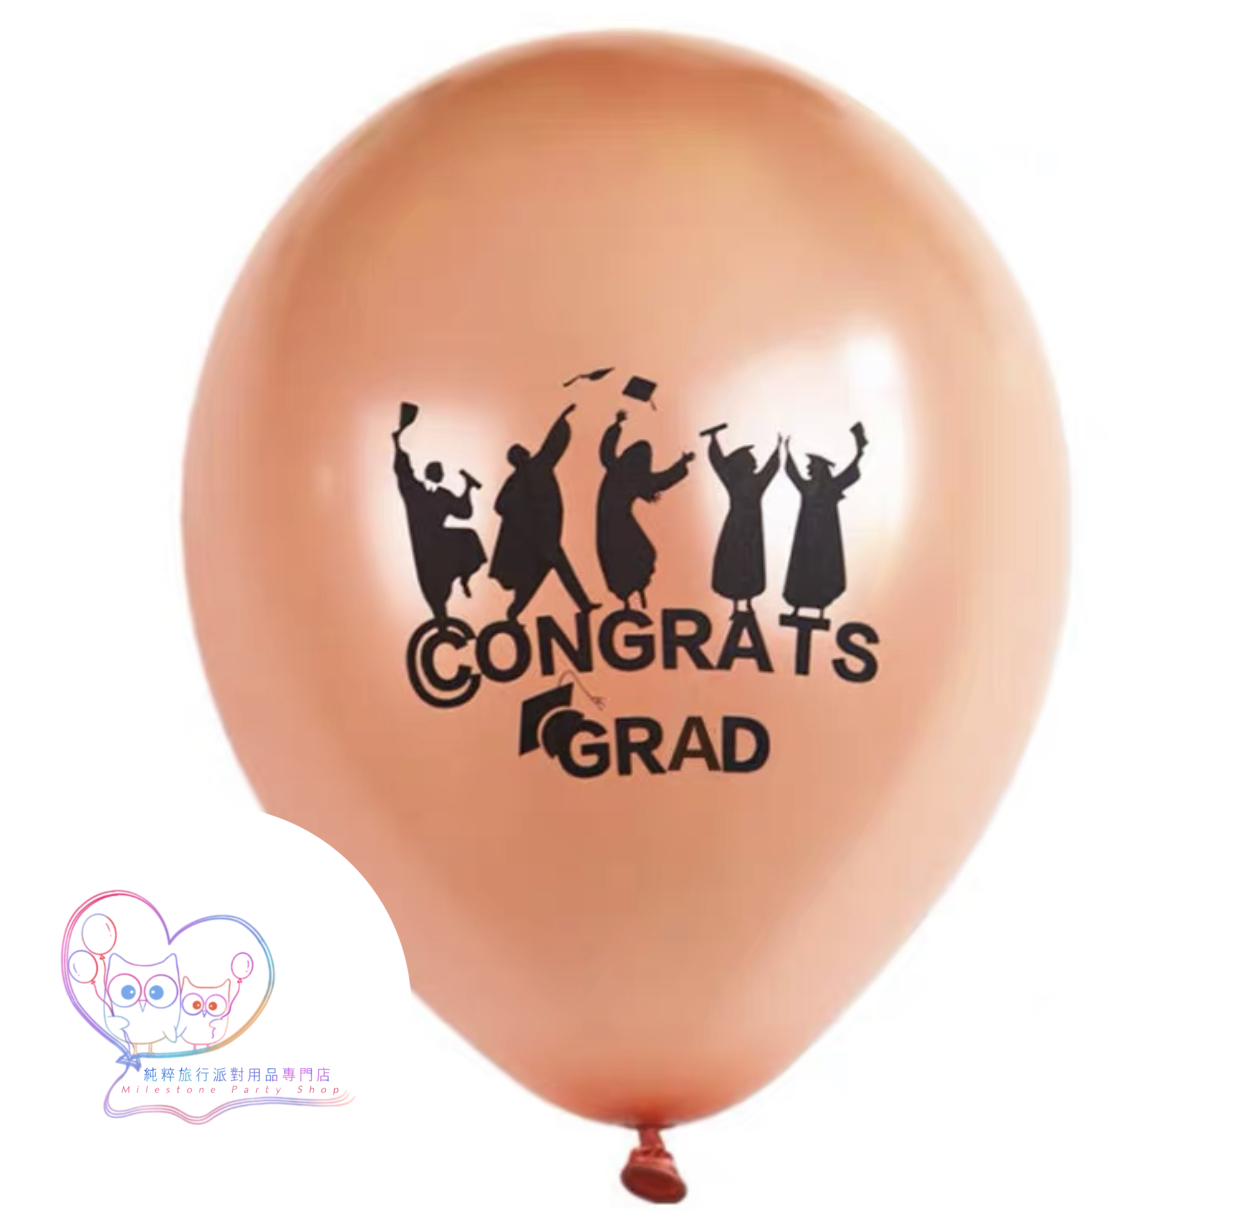 12吋乳膠氣球 (Congrats Grad) (玫瑰金色) (1pc) LBG1-3